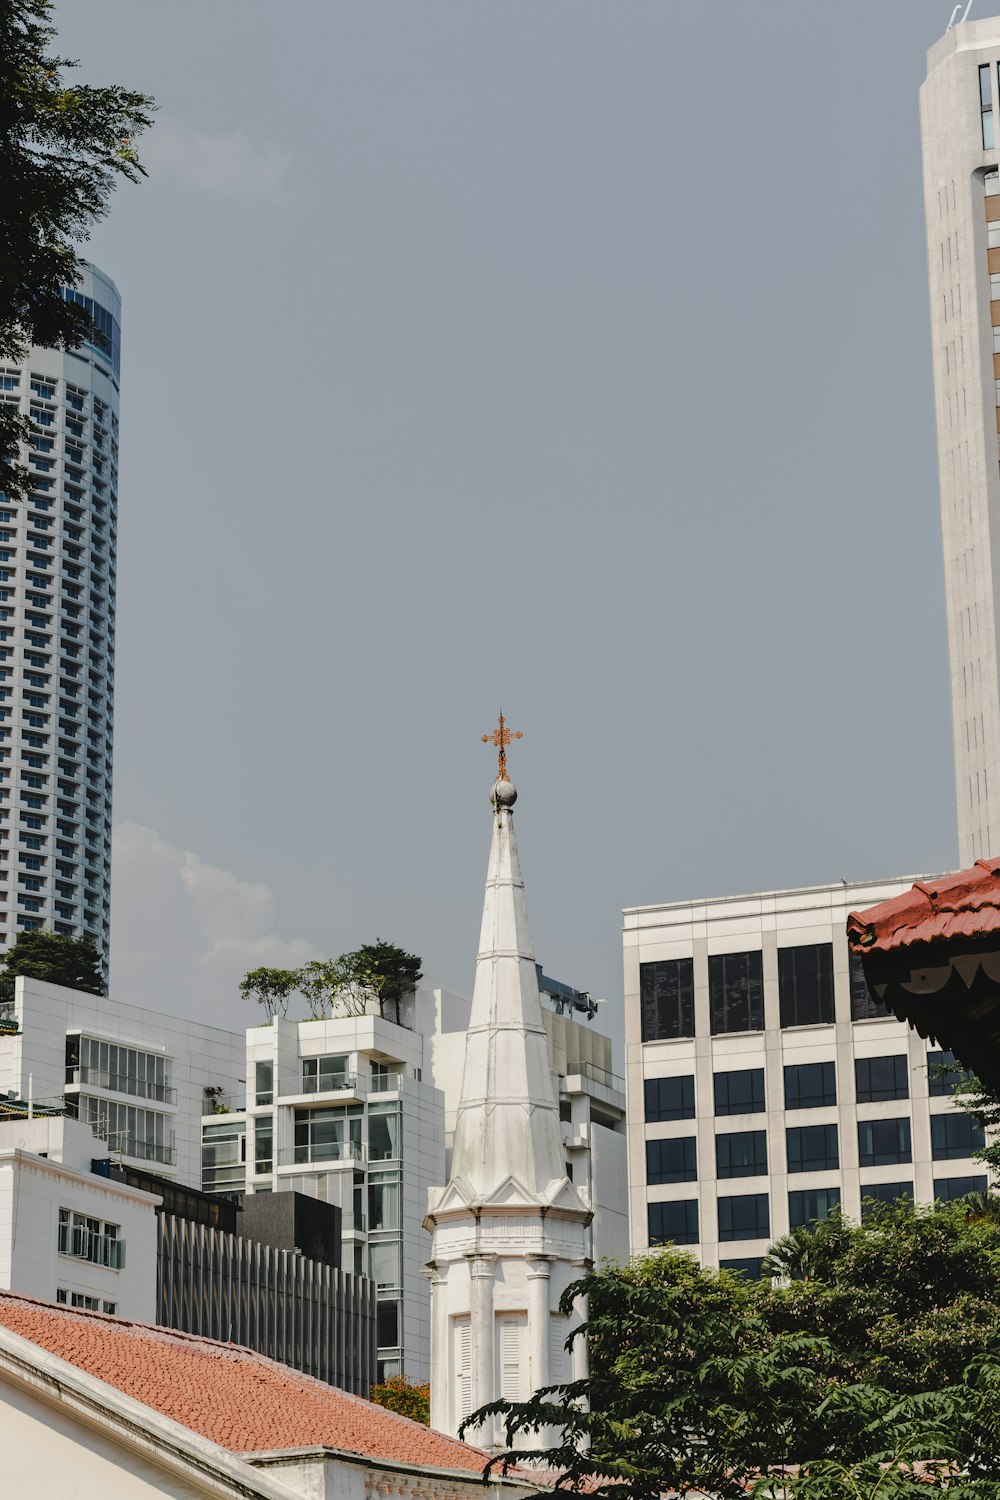 Un campanario de iglesia en medio de una ciudad